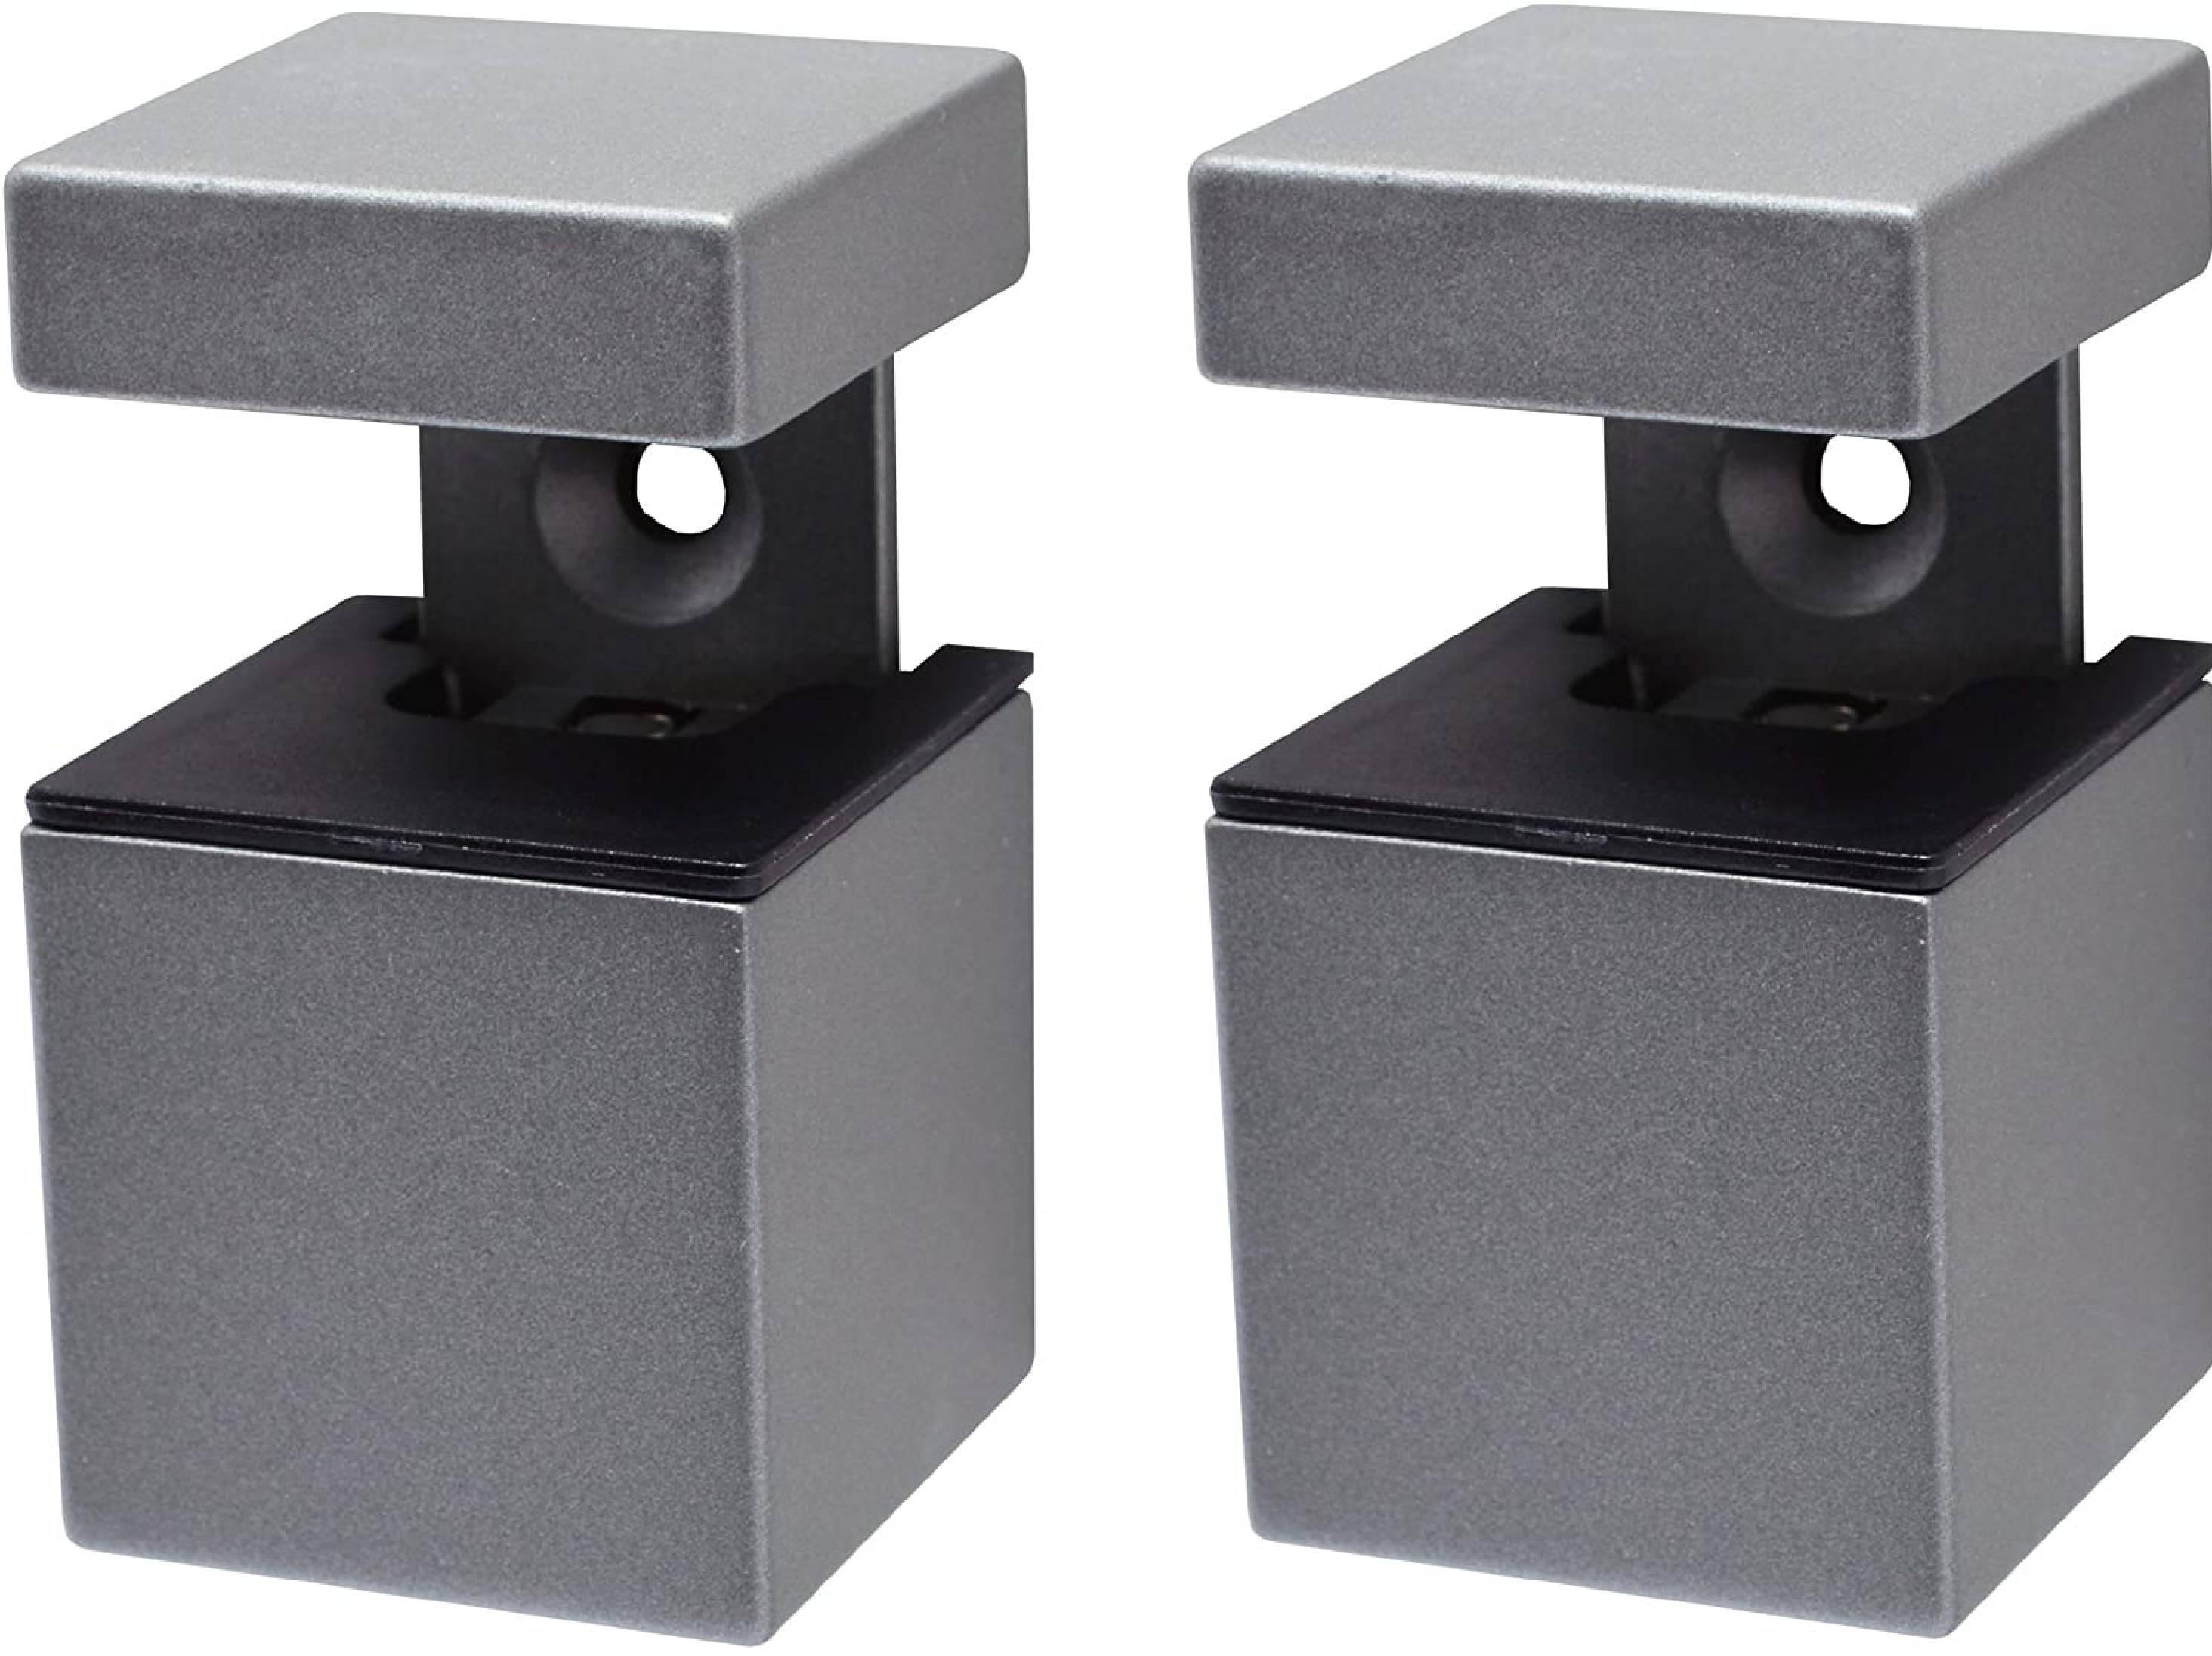 MiniCube Kubus Mini Regalträger, Metall, Matt Silber, 12 x 3.5 x 17 cm, 2-Einheiten